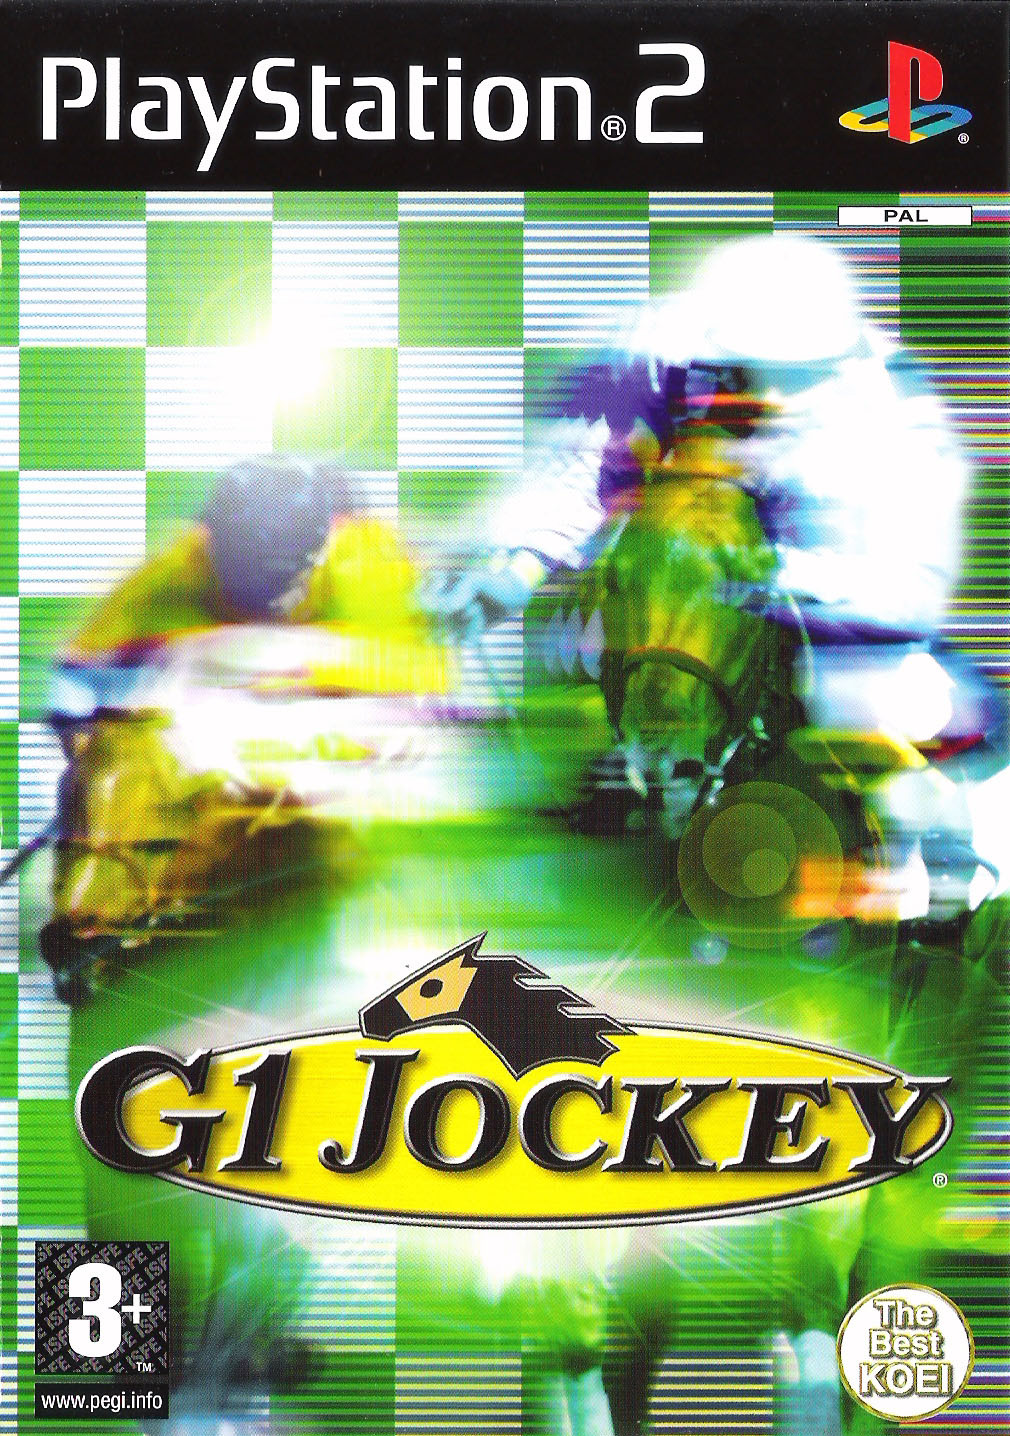 G1 Jockey - PlayStation 2 Játékok